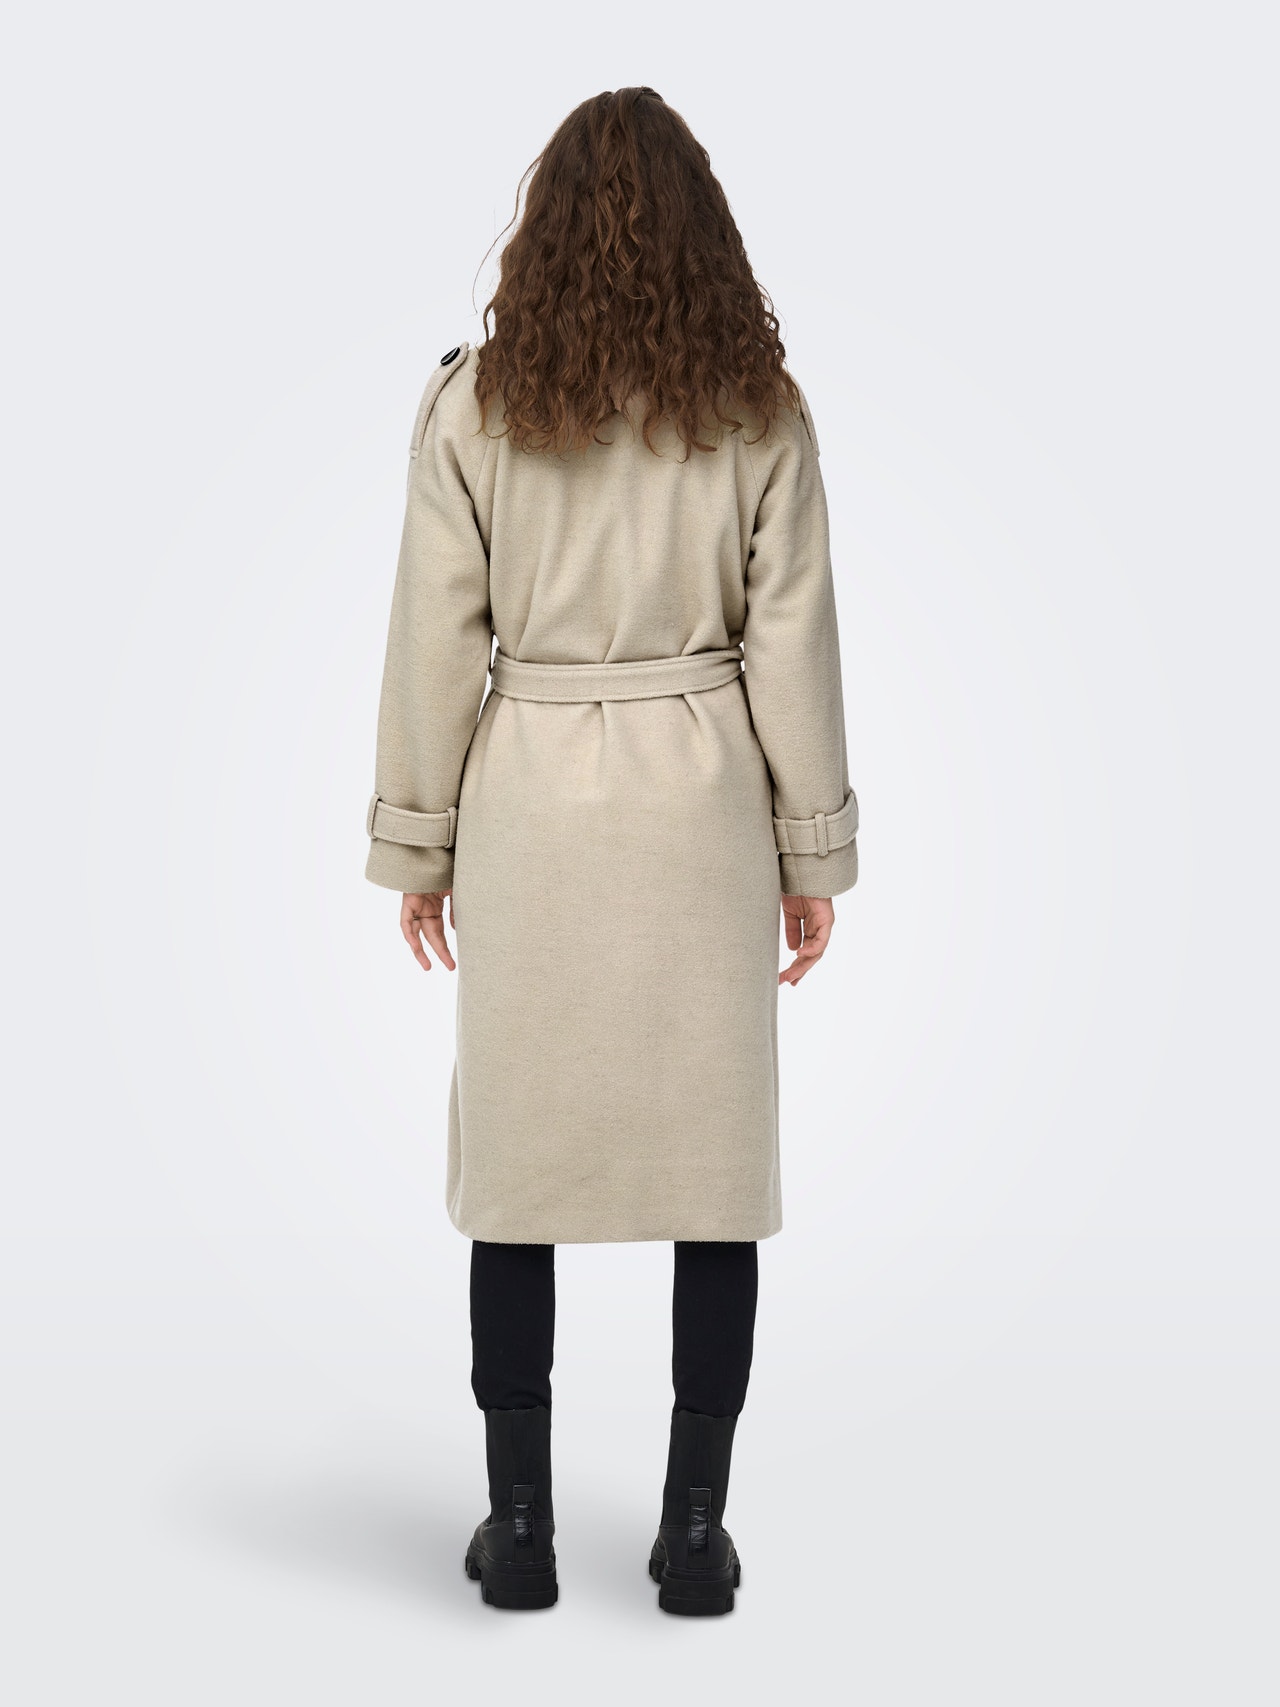 Whitney Moske egetræ Lang Trenchcoat med uld med 50% rabat! | ONLY®